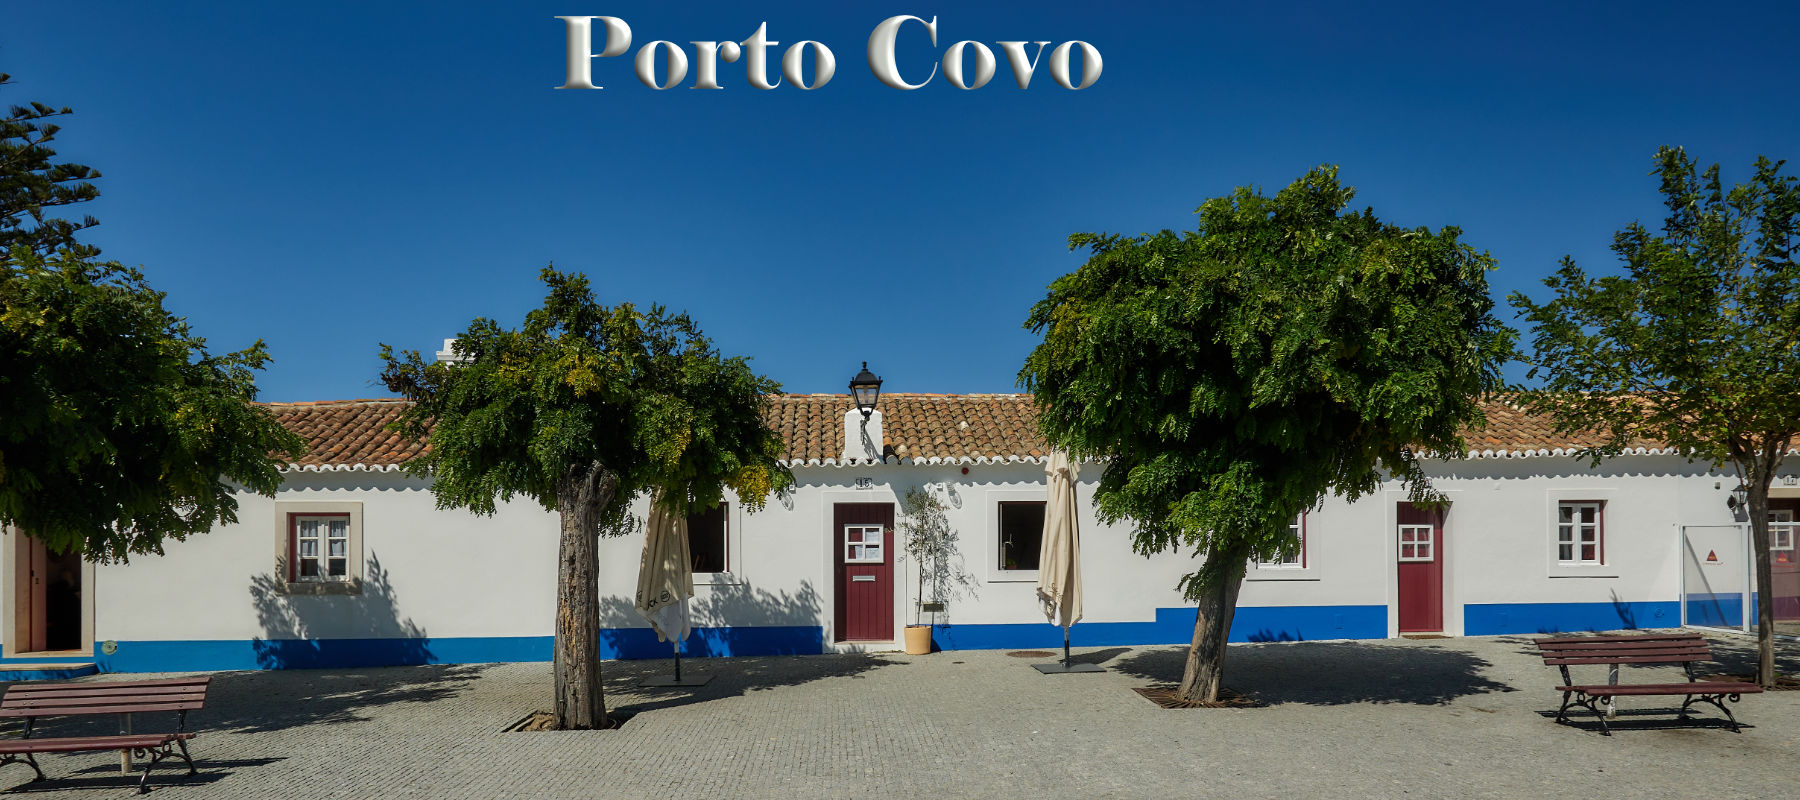 Titel Porto Covo